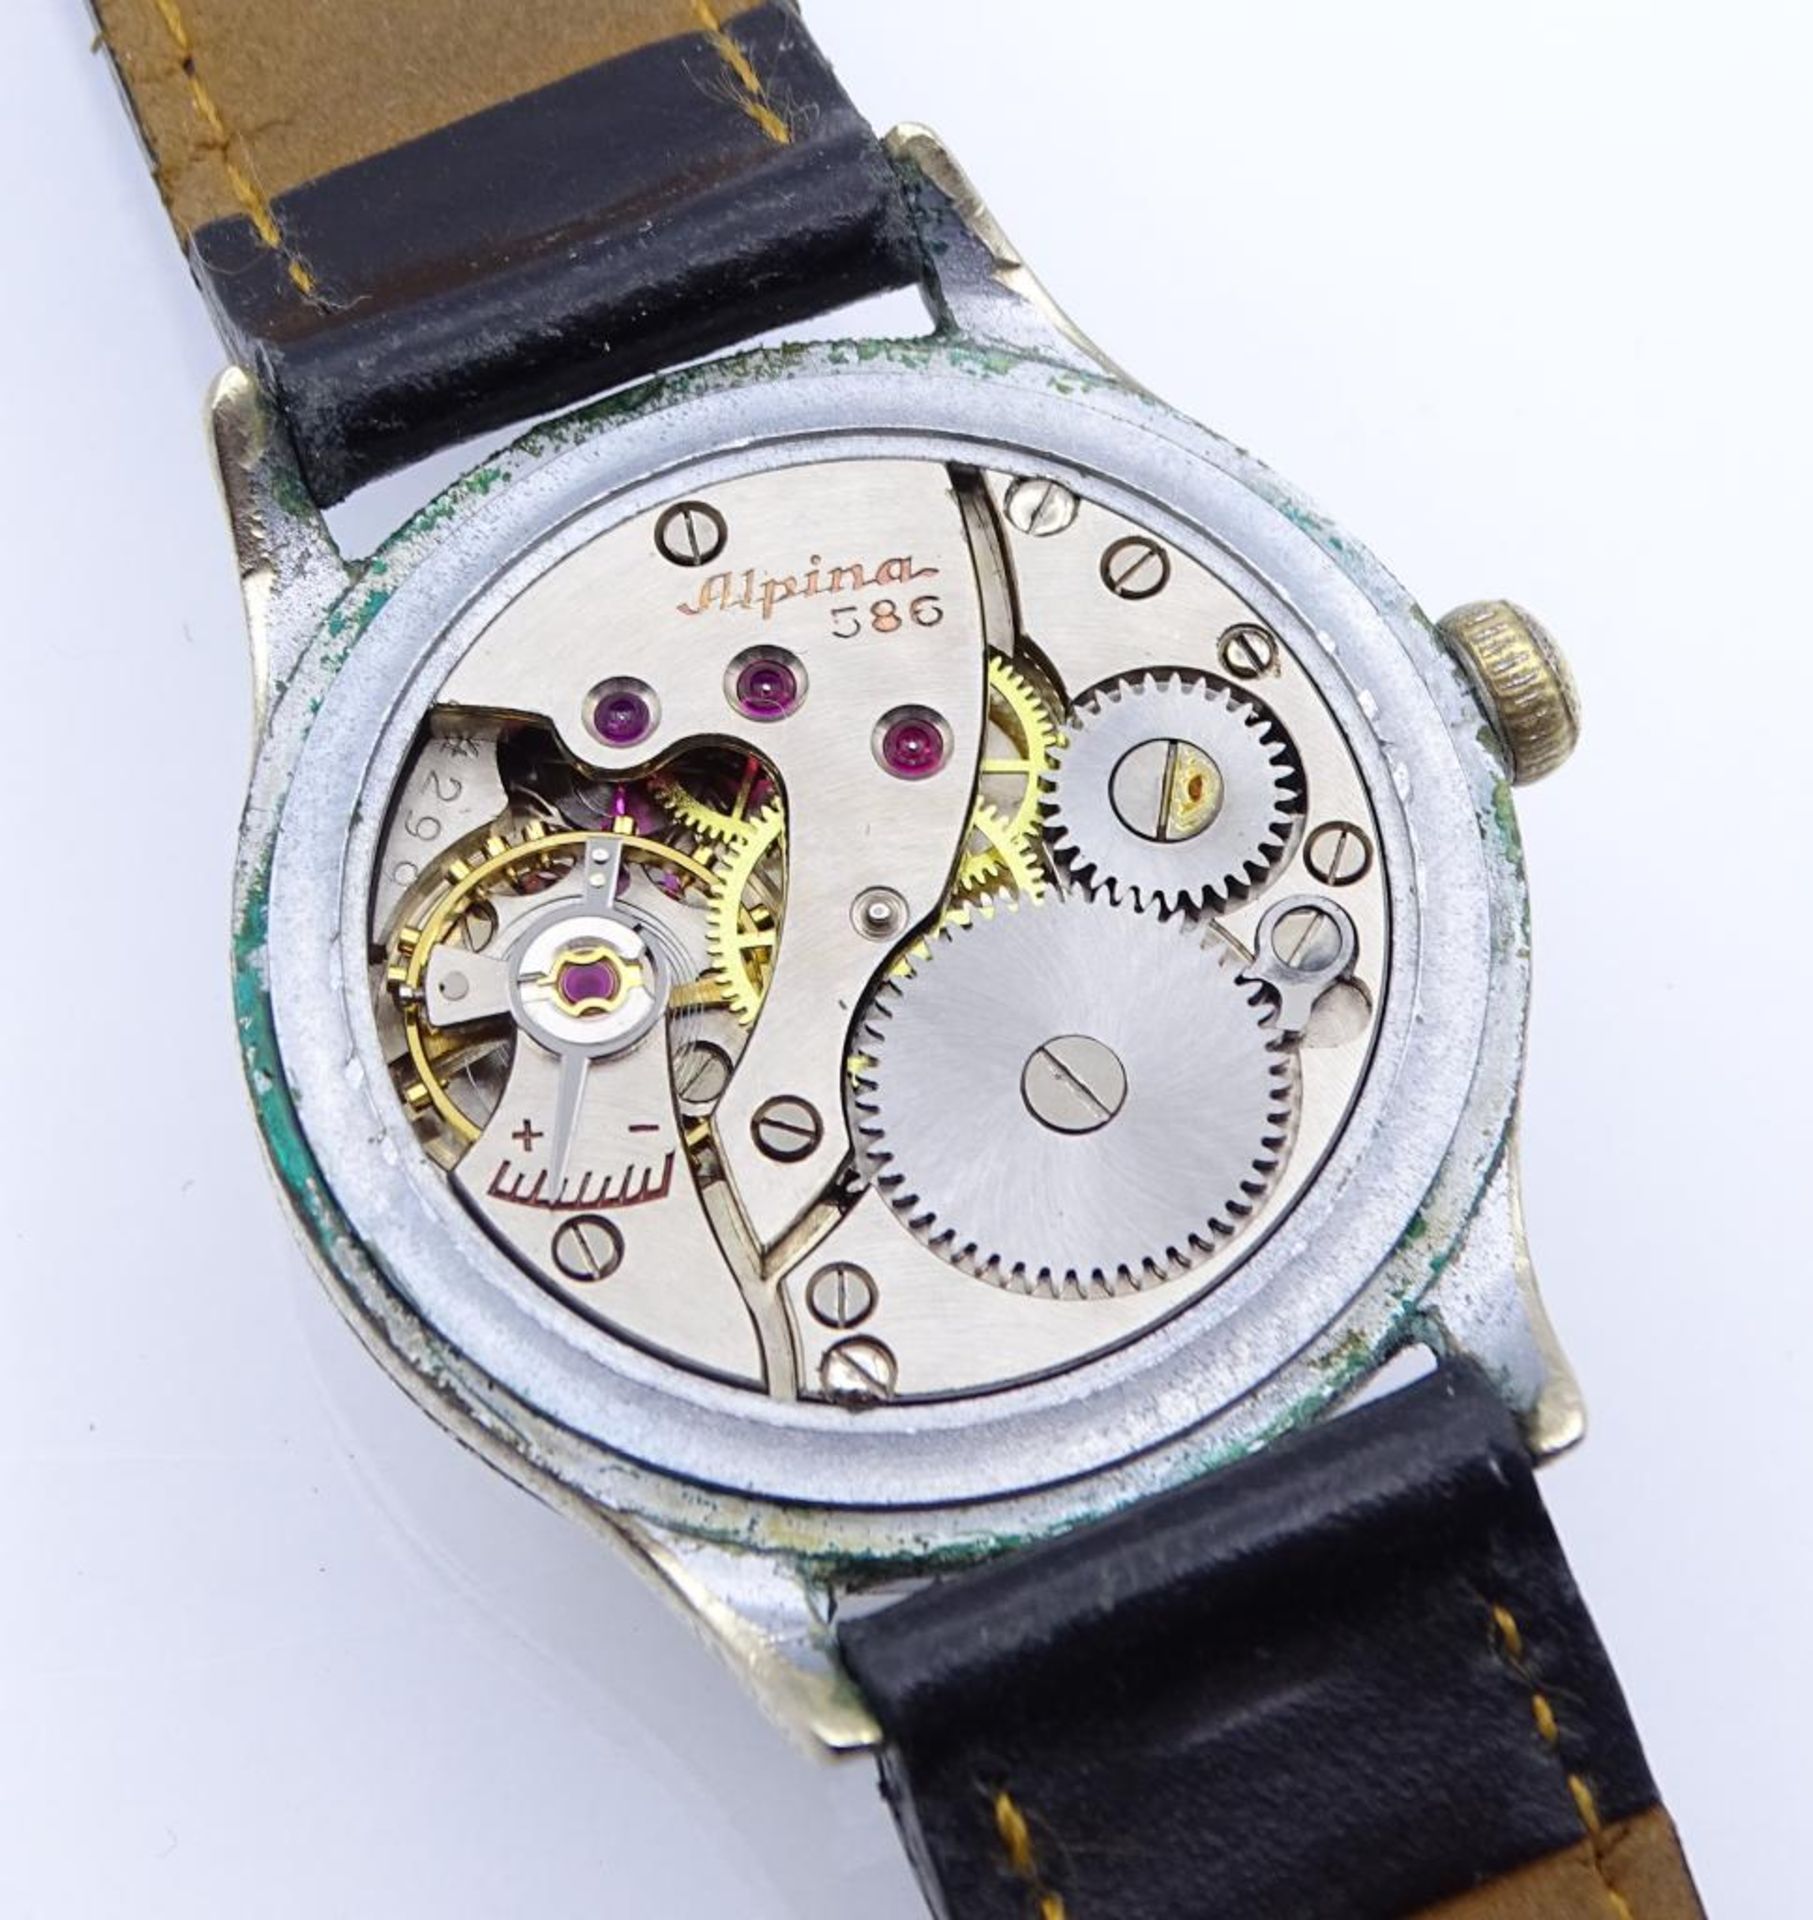 Kriegsmarine Armbanduhr "K.M.Alpina", Cal. 486, Edelstahlgehäuse,mechanisch,Werk läuft, Band - Bild 5 aus 6